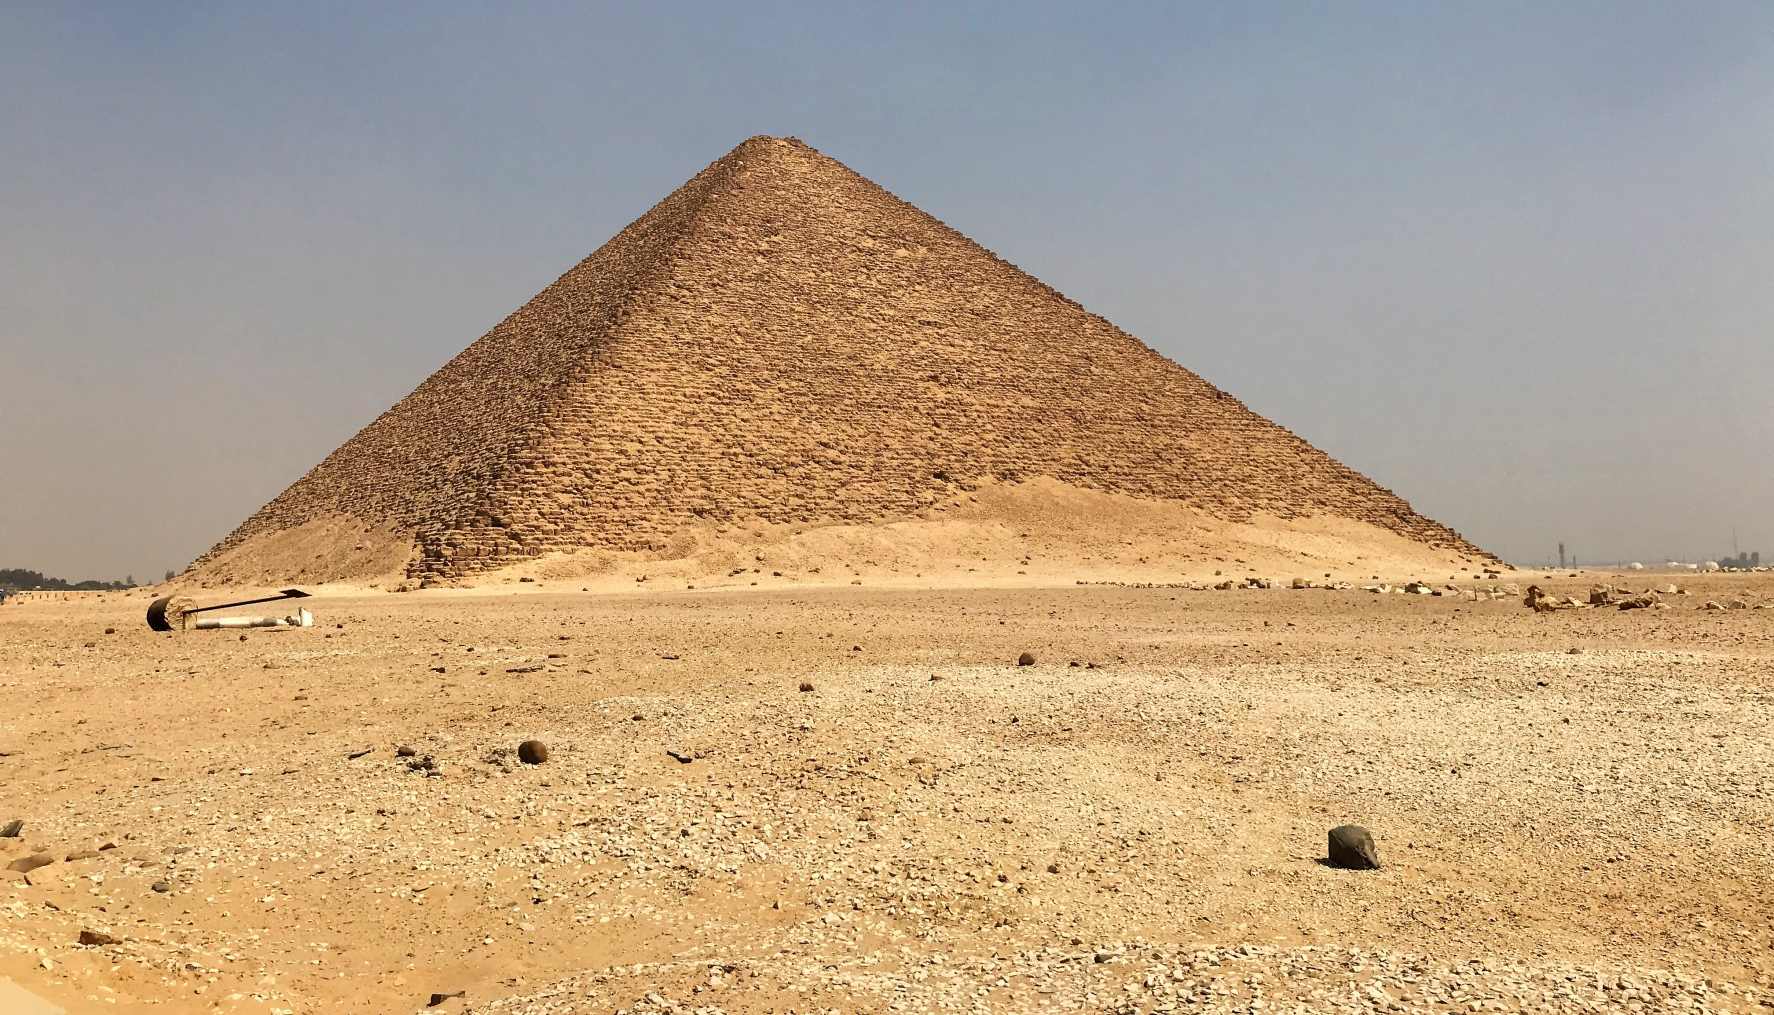 Vörös piramis, Dahshur, Egyiptom